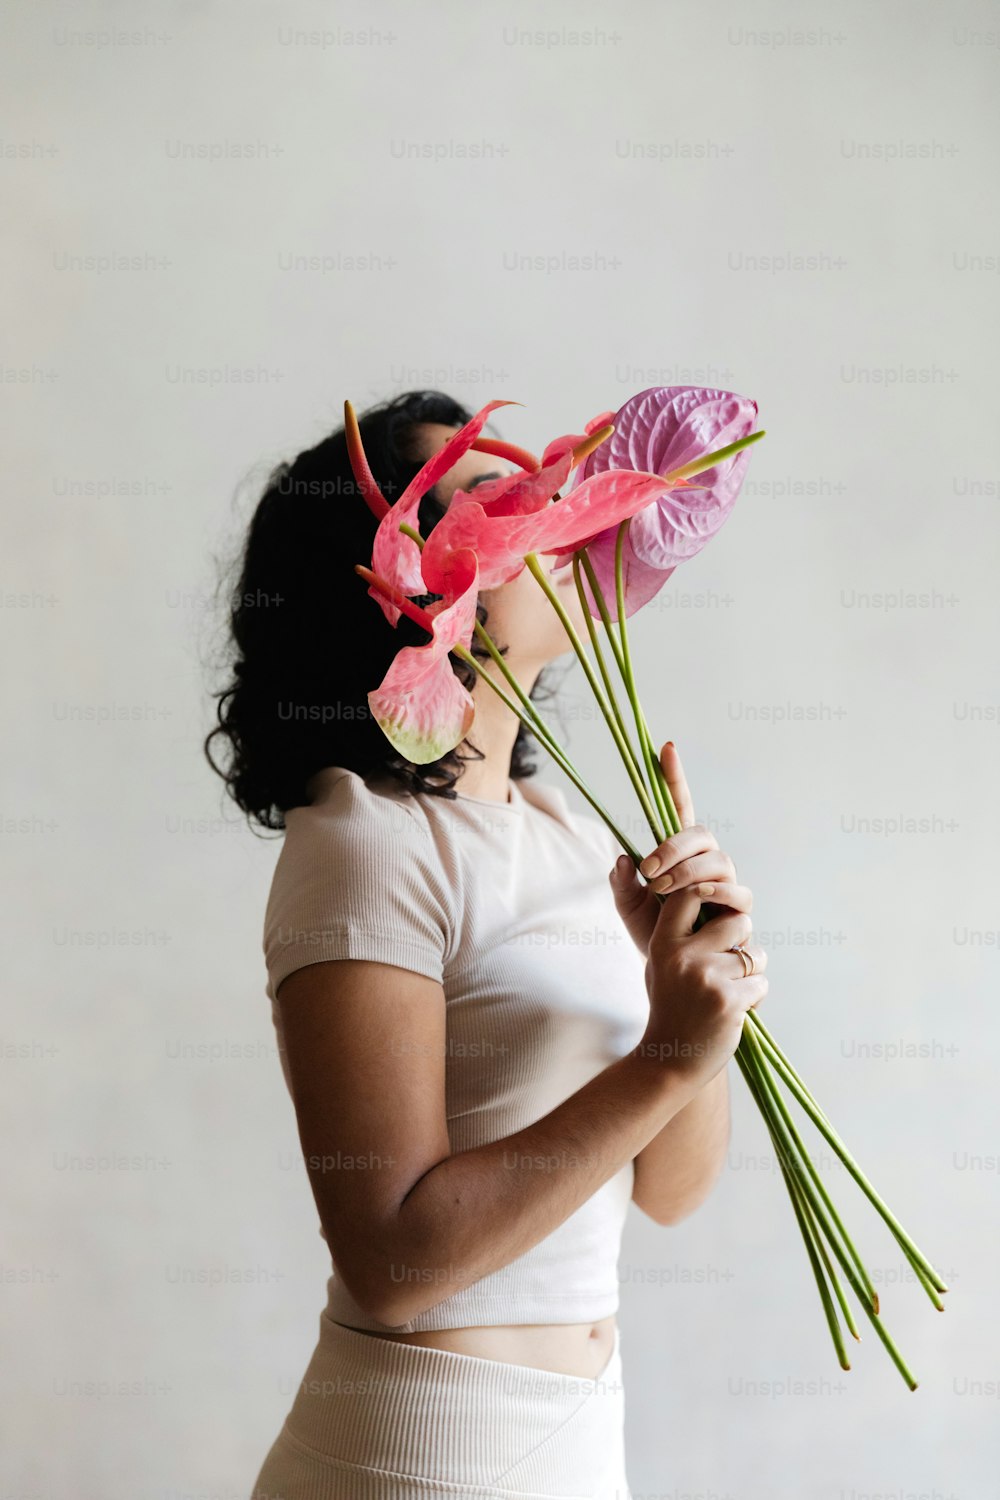 Eine Frau, die einen Strauß rosa Blumen hält